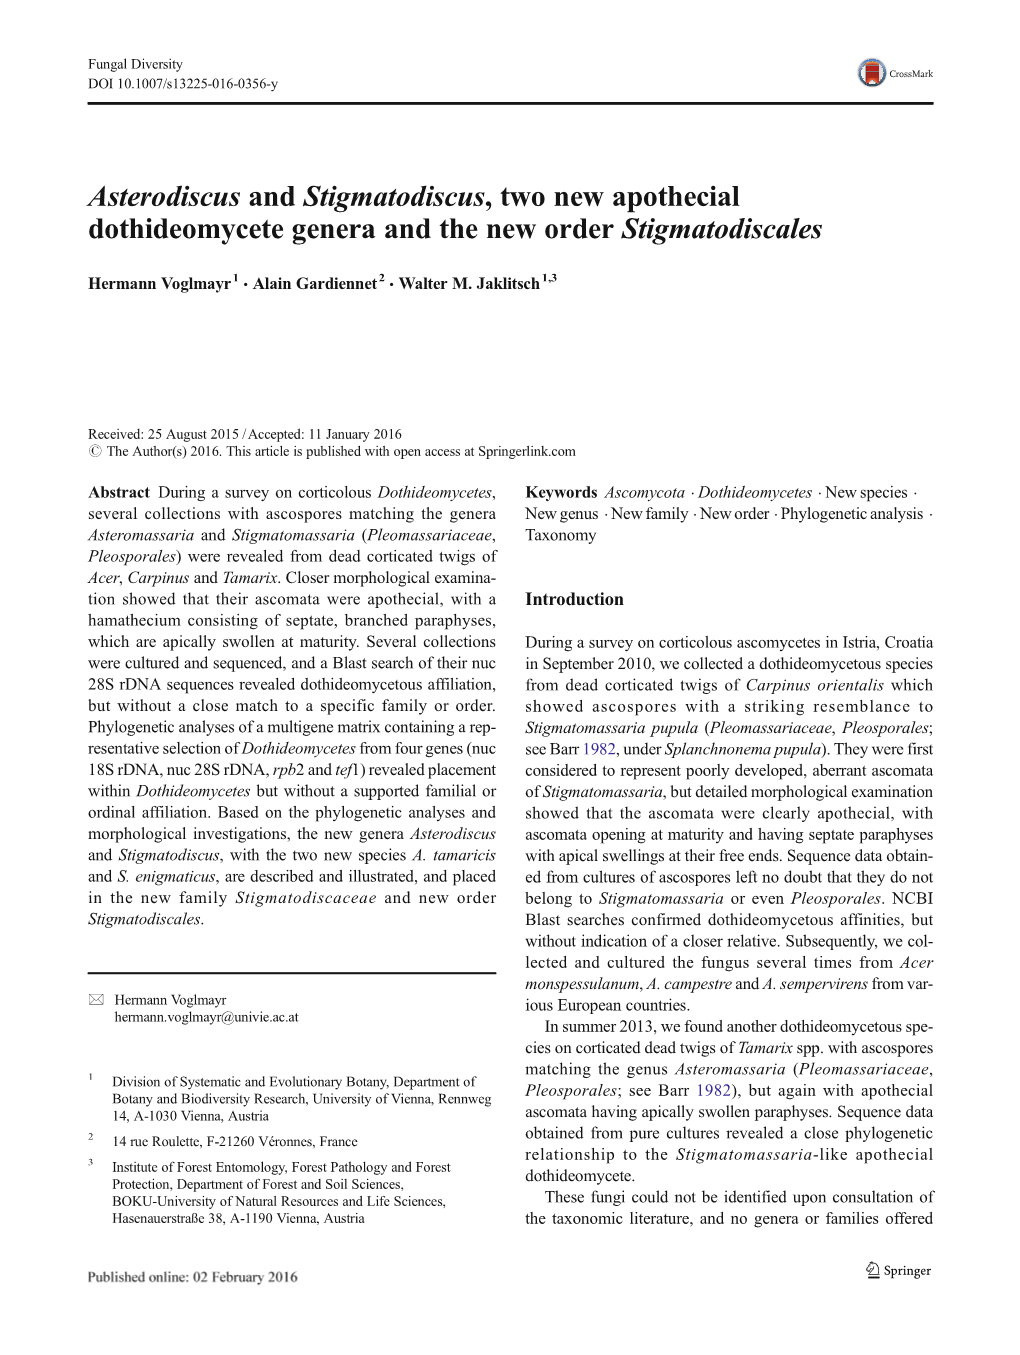 Asterodiscus and Stigmatodiscus, Two New Apothecial Dothideomycete Genera and the New Order Stigmatodiscales